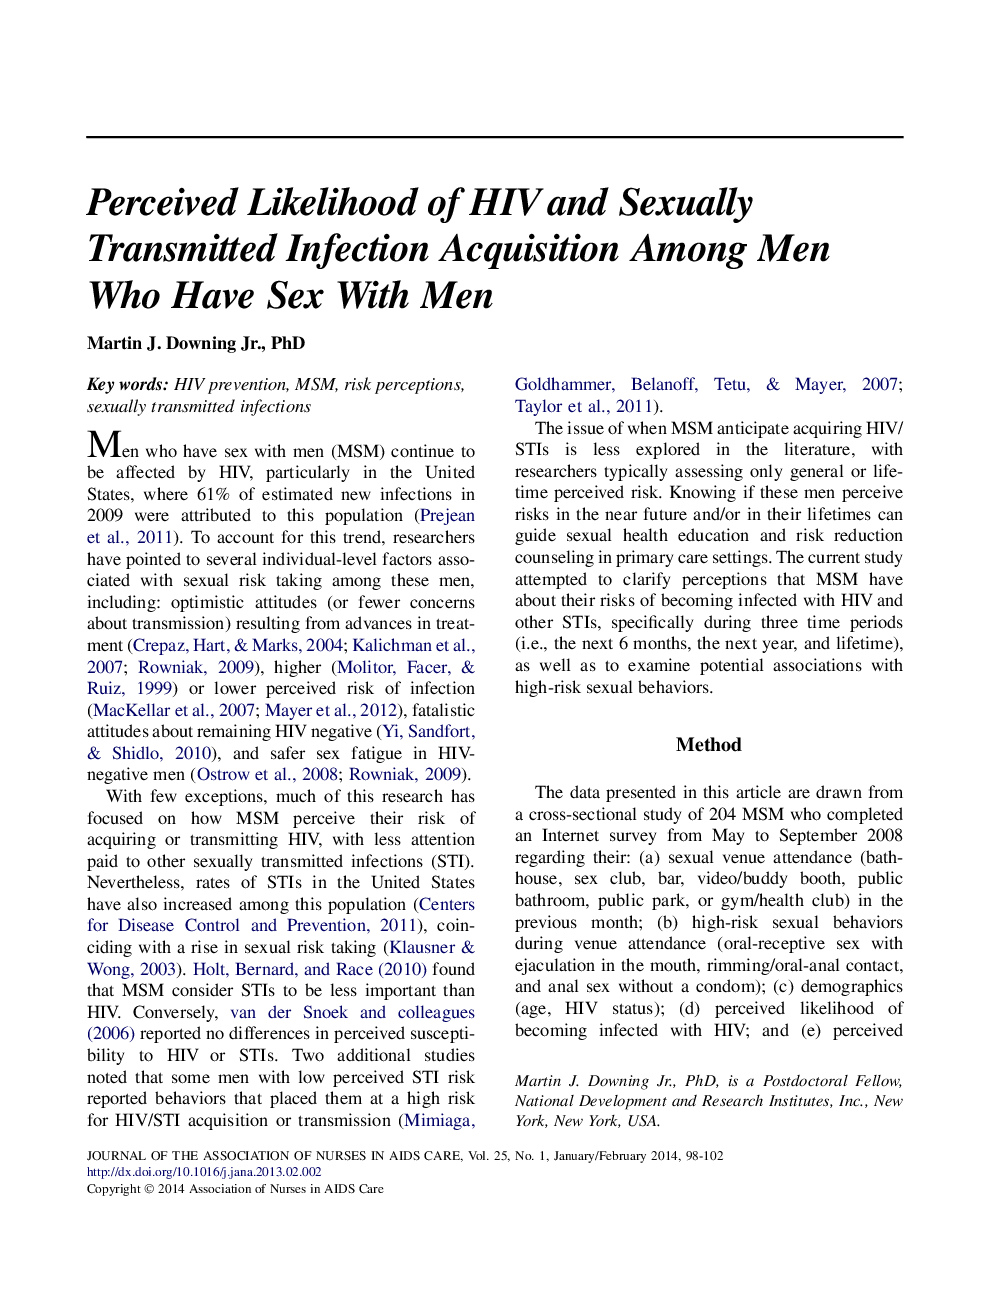 احتمال ابتلا به اچ آی وی و ابتلا به عفونت های منتقله از راه جنسی در میان مردان دارای رابطه جنسی با مردان 